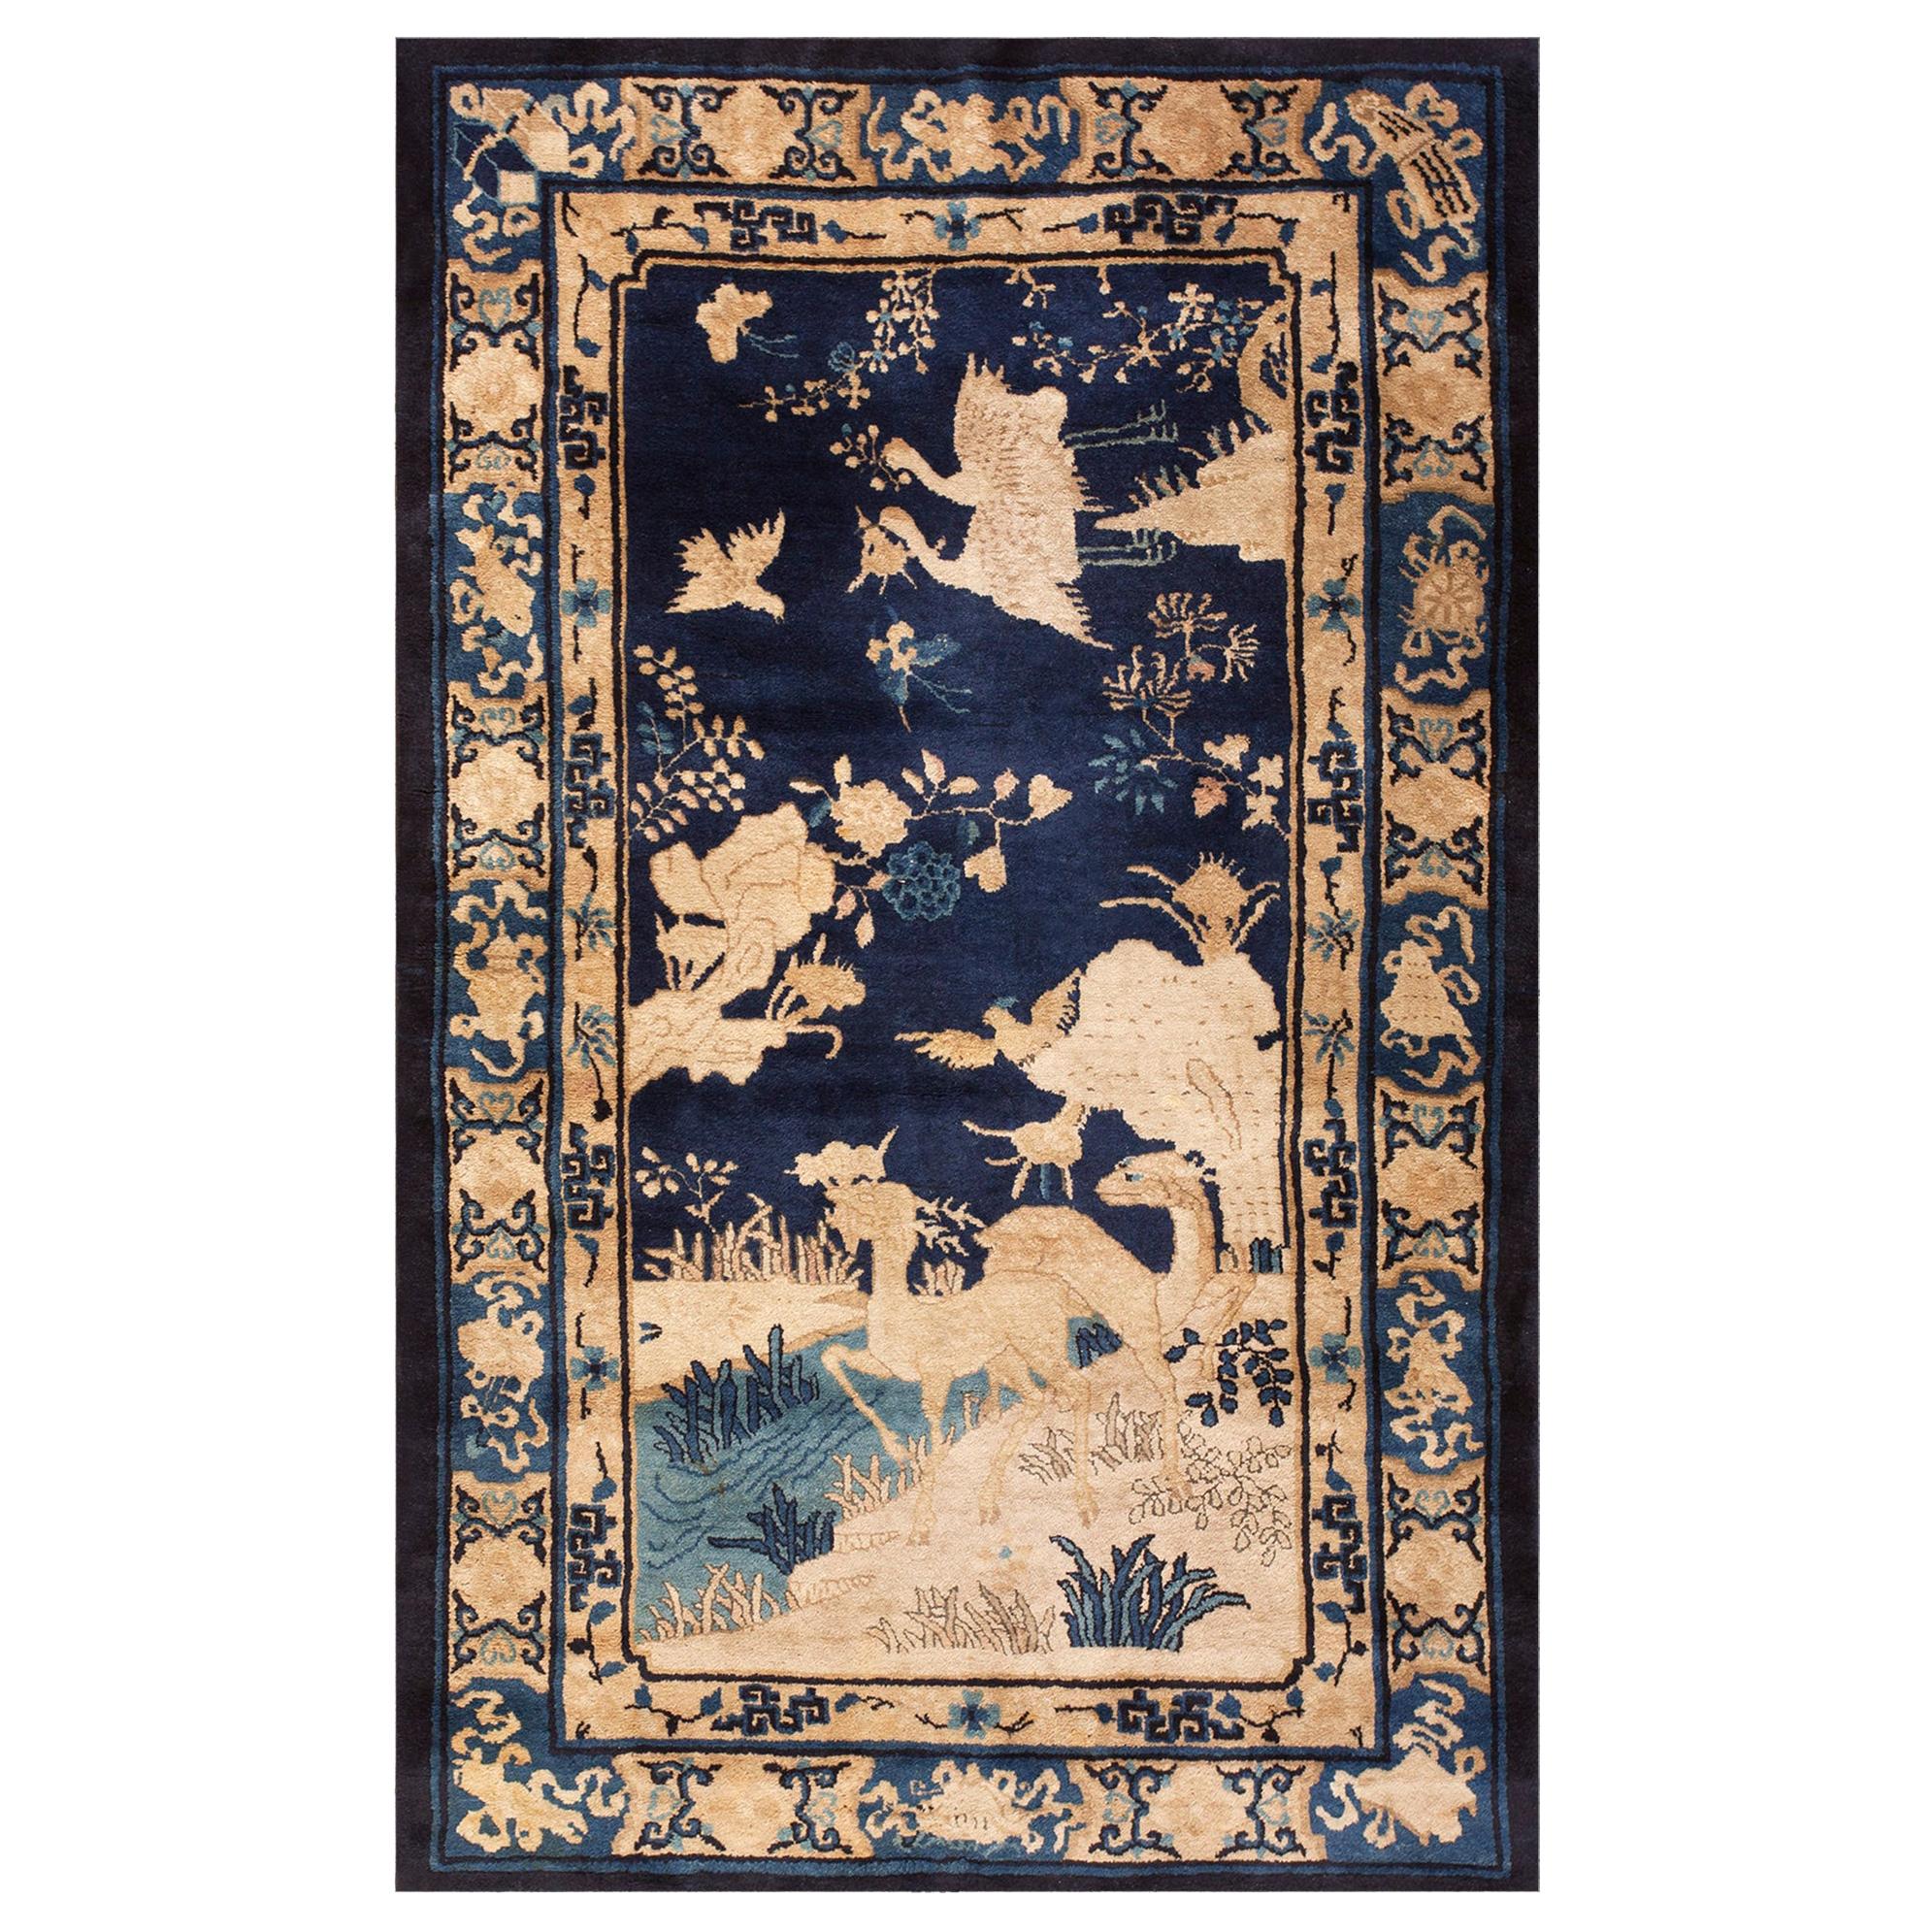 Chinesischer Peking-Teppich des späten 19. Jahrhunderts ( 4' x 6'8" - 122 x 203") 